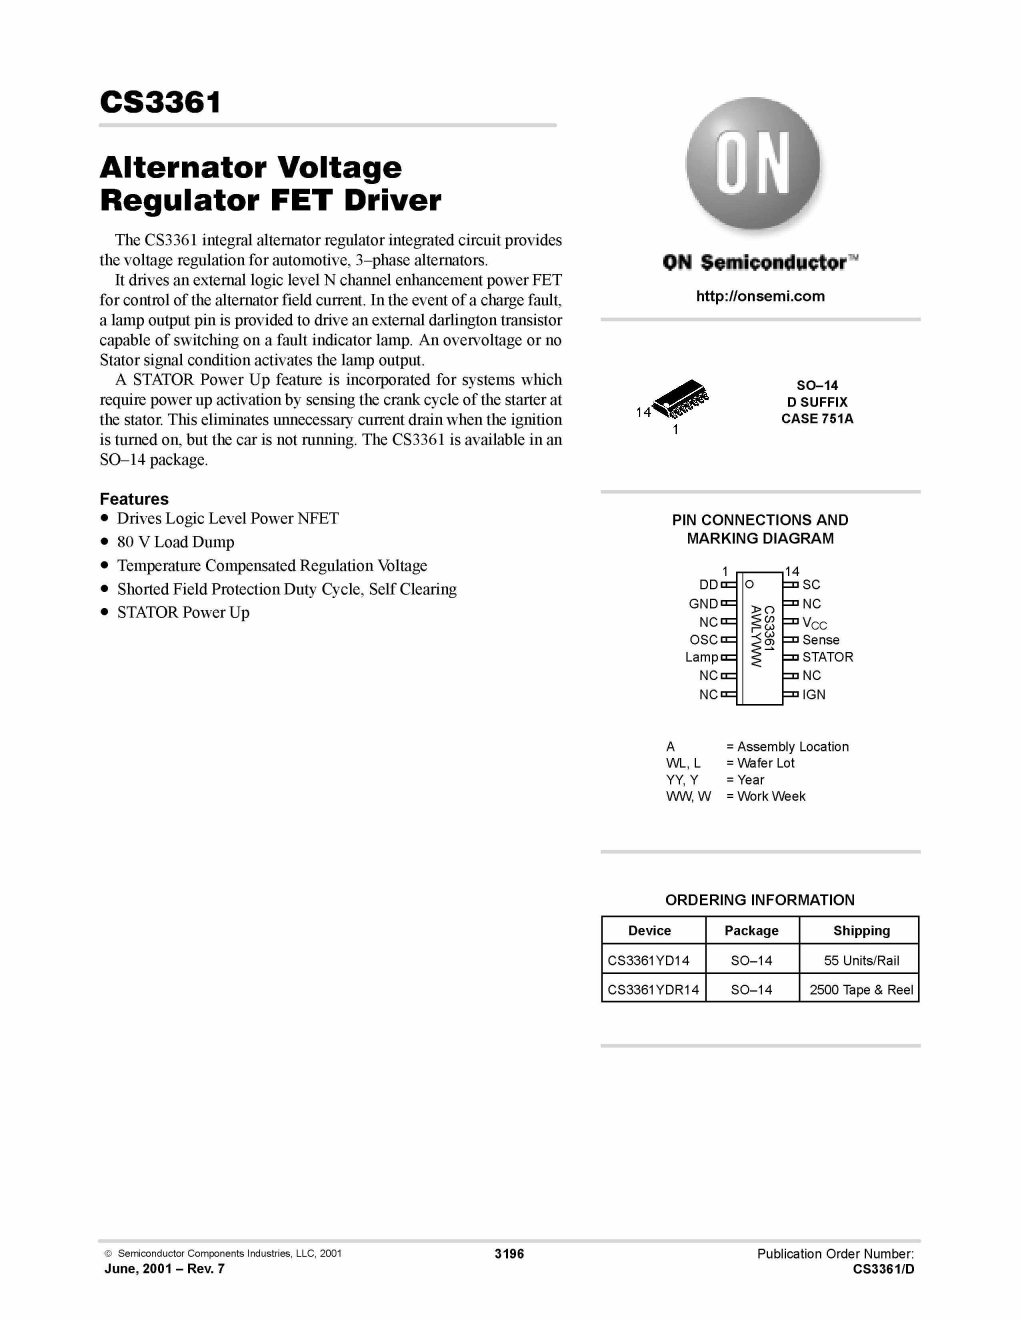 Alternator Voltage Regulator FET Driver